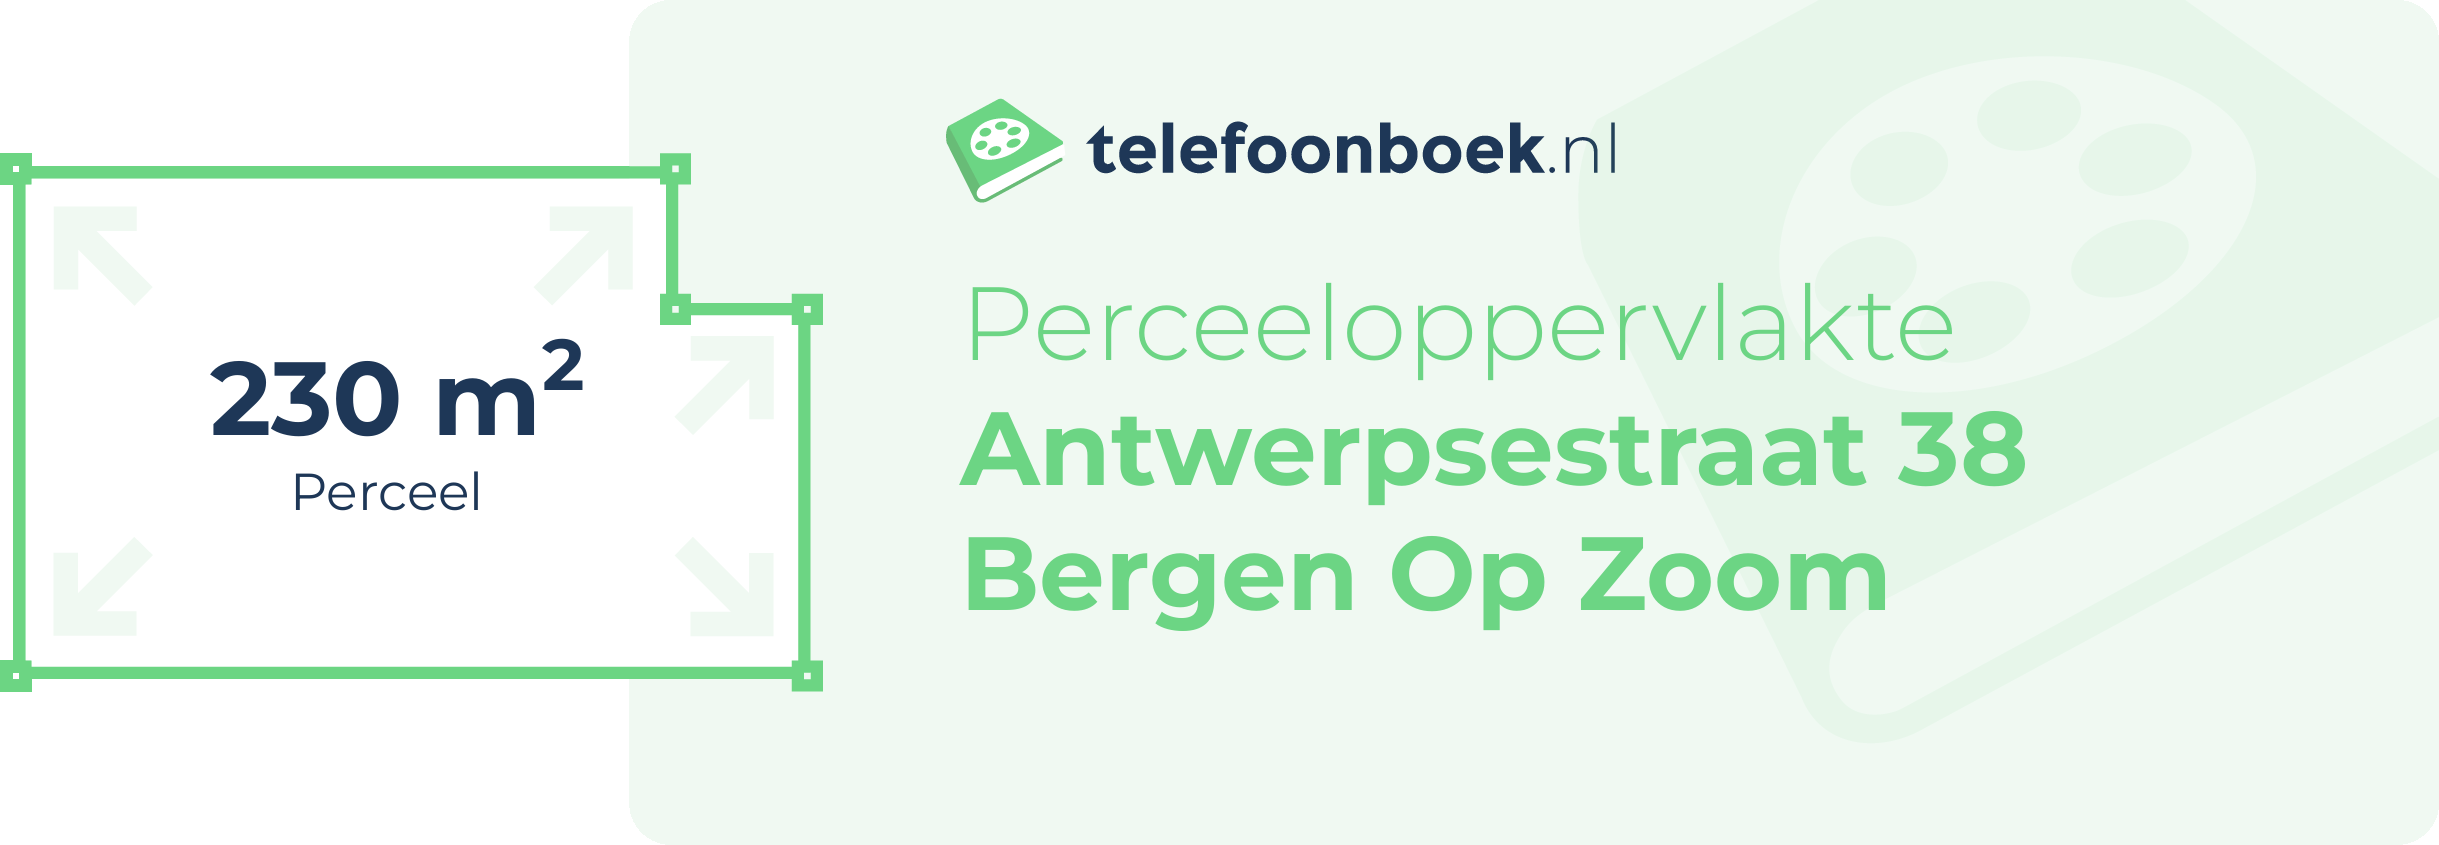 Perceeloppervlakte Antwerpsestraat 38 Bergen Op Zoom